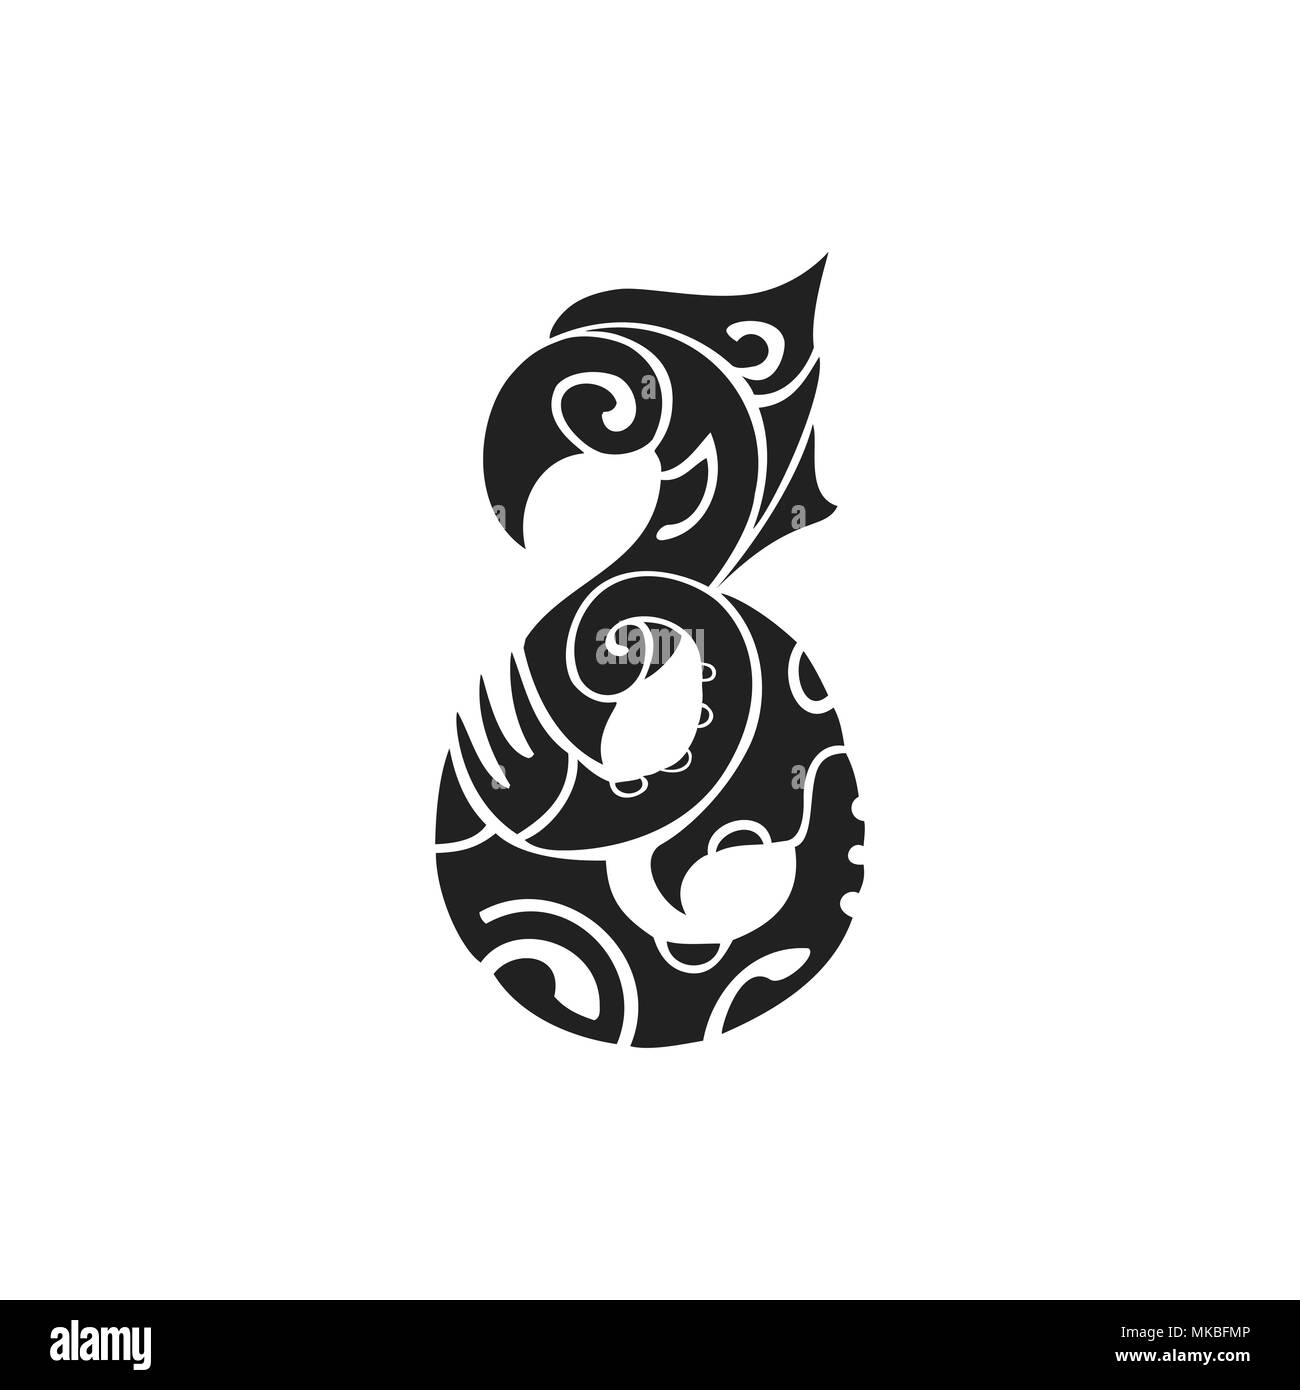 Vector nero inchiostro monocromatico disegnati a mano polinesiano autentico folk art simbolo creatura mitologica Manaia illustrazione isolato sfondo bianco Illustrazione Vettoriale